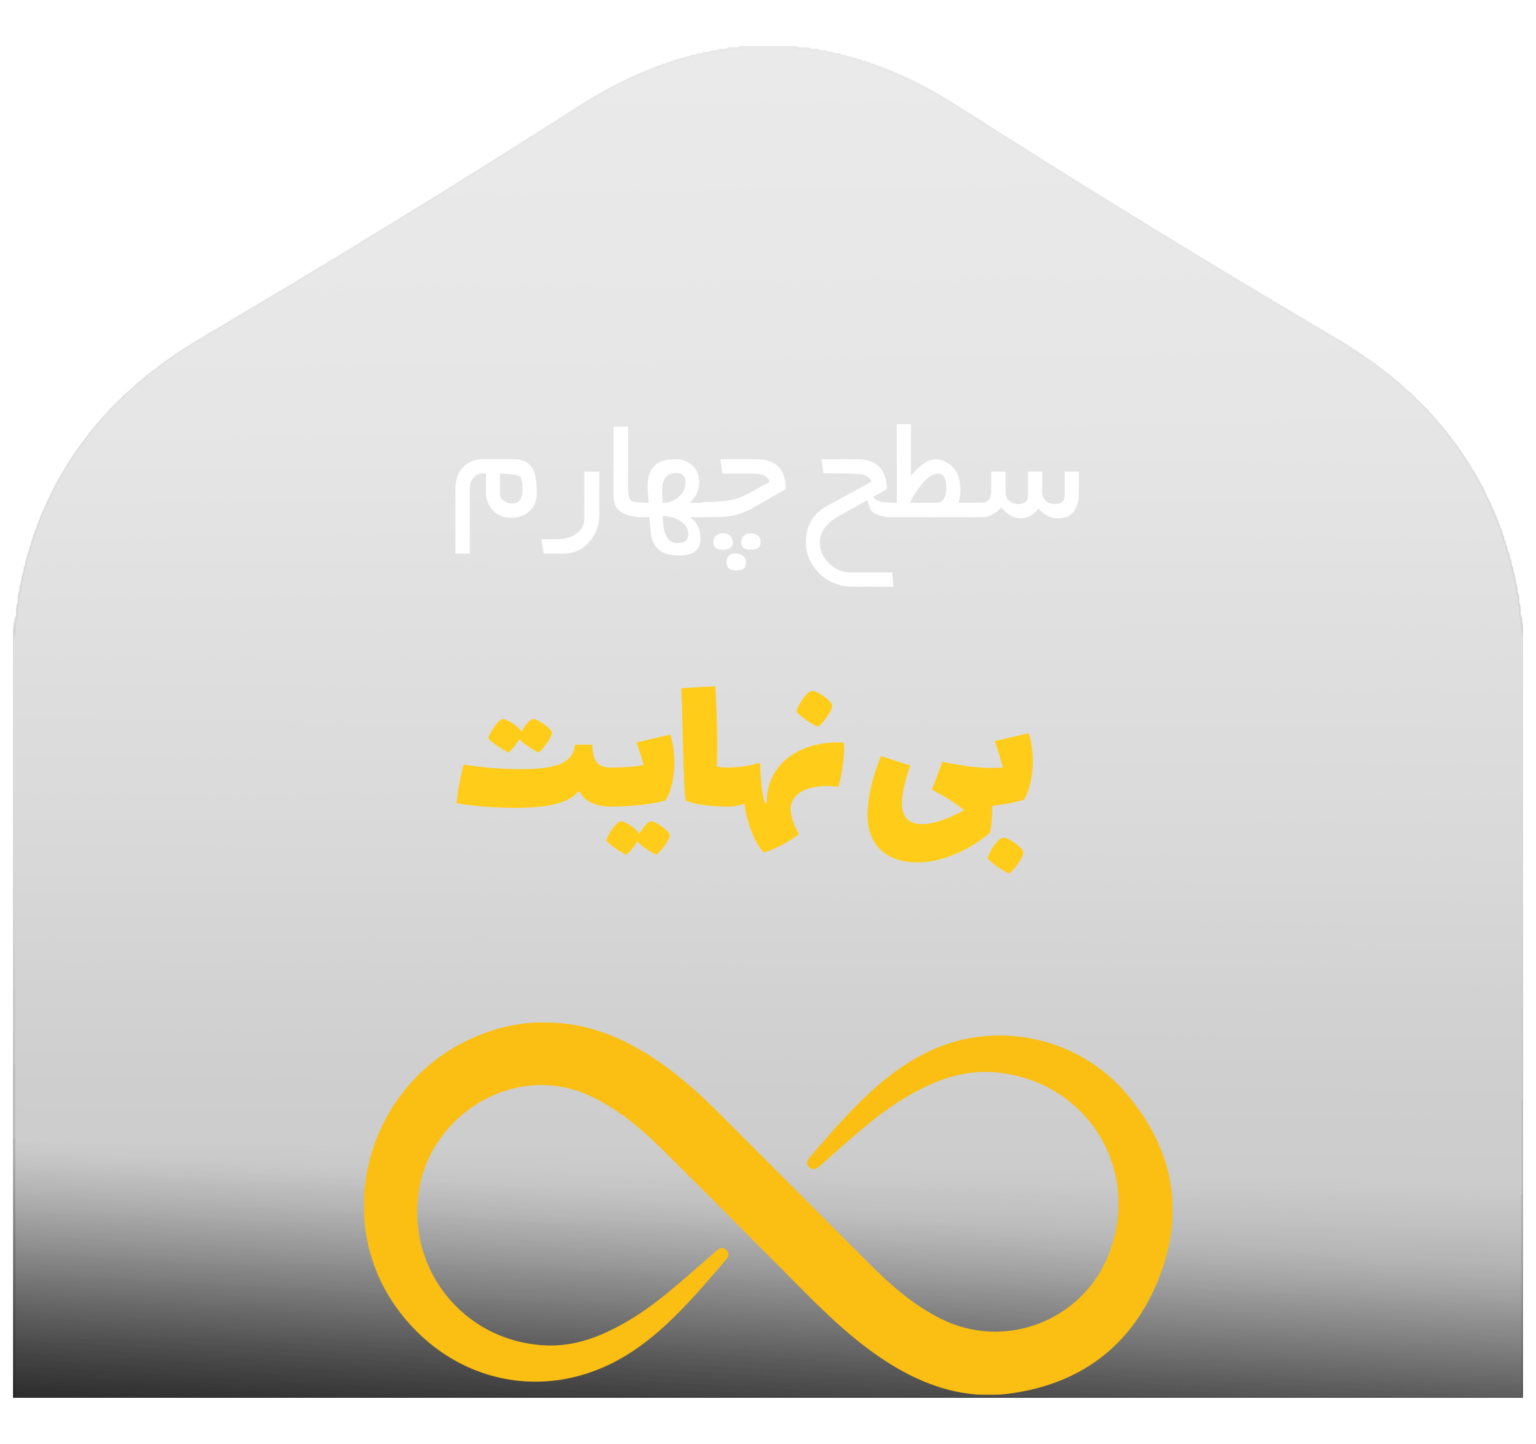 وبسایت رسمی محمد بصیری؛ مرجع آموزش متافیزیک در ایران